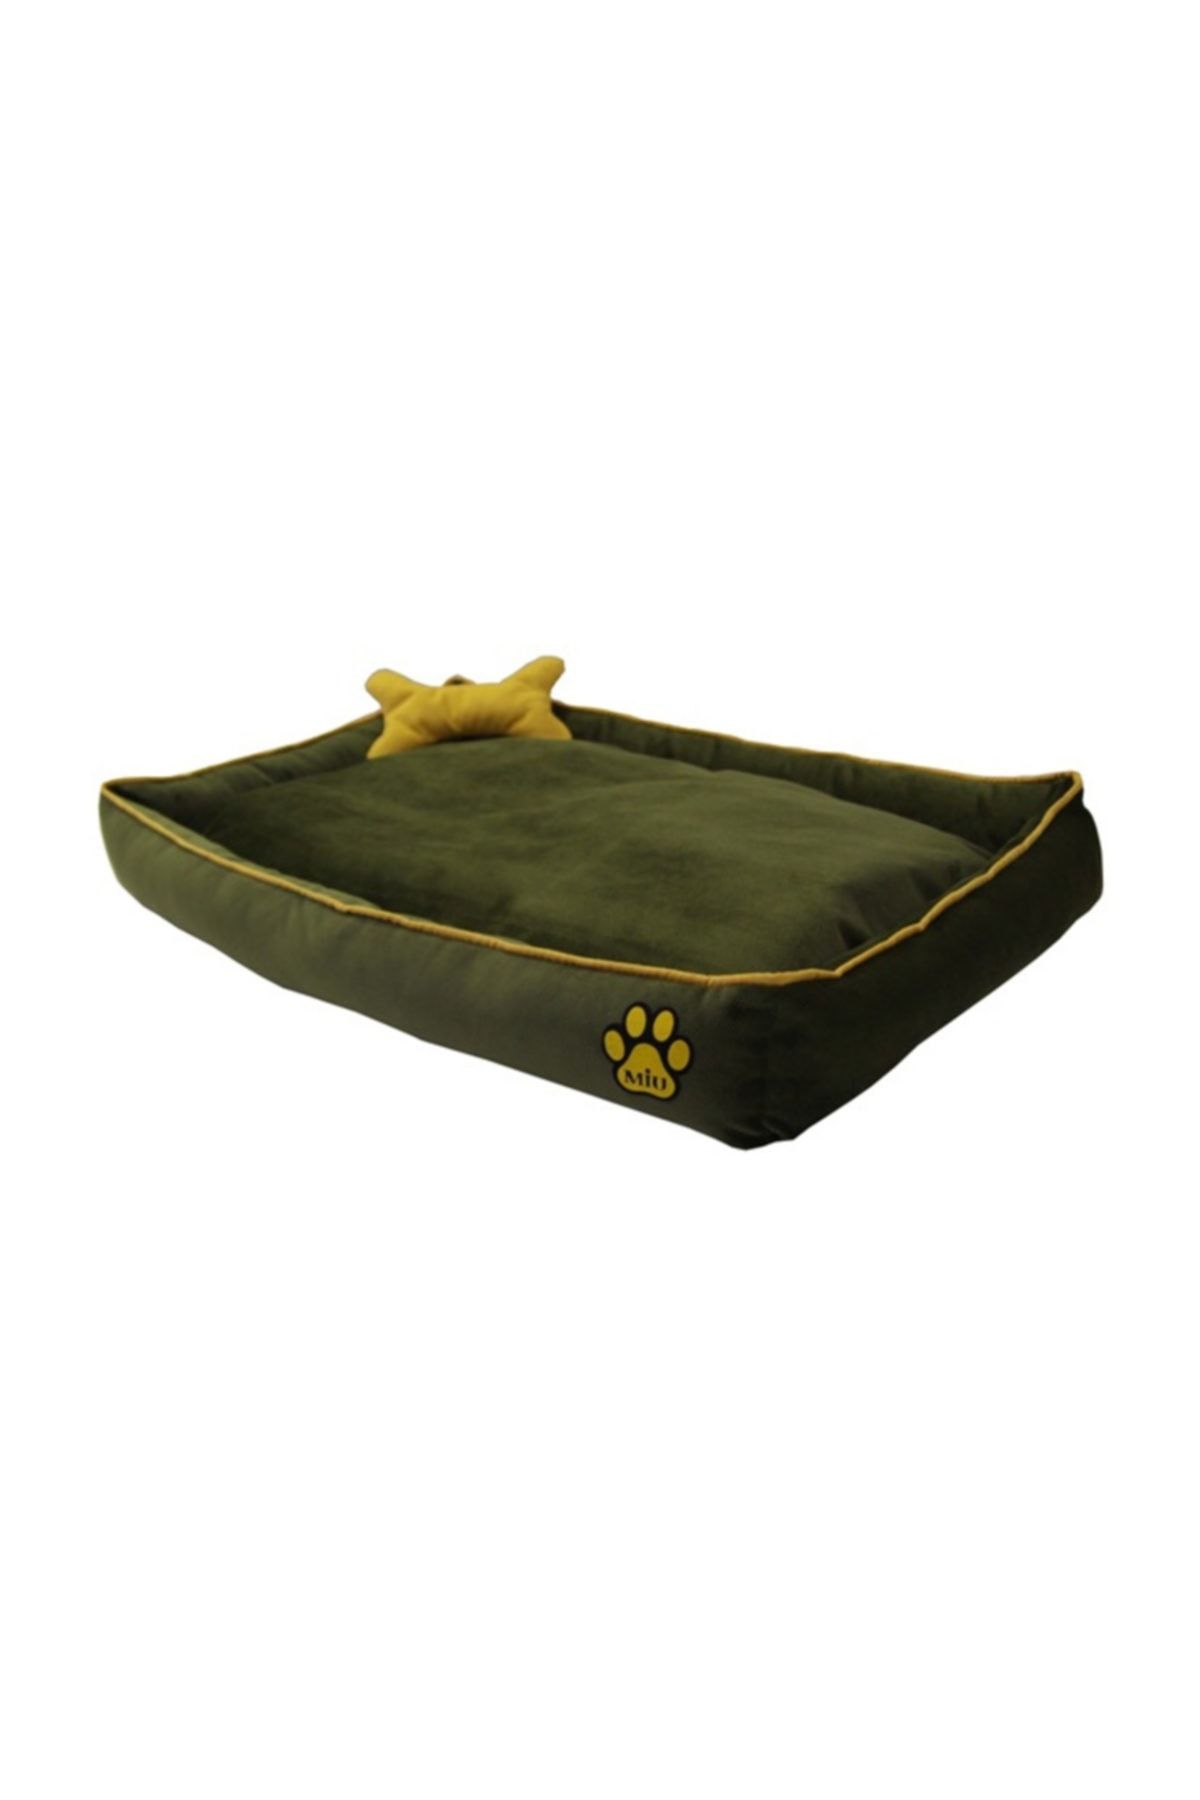 Miu Miu Miu Tay Tüyü Köpek Yatağı Kemik Yastıklı 14*70*100 Cm Yeşil